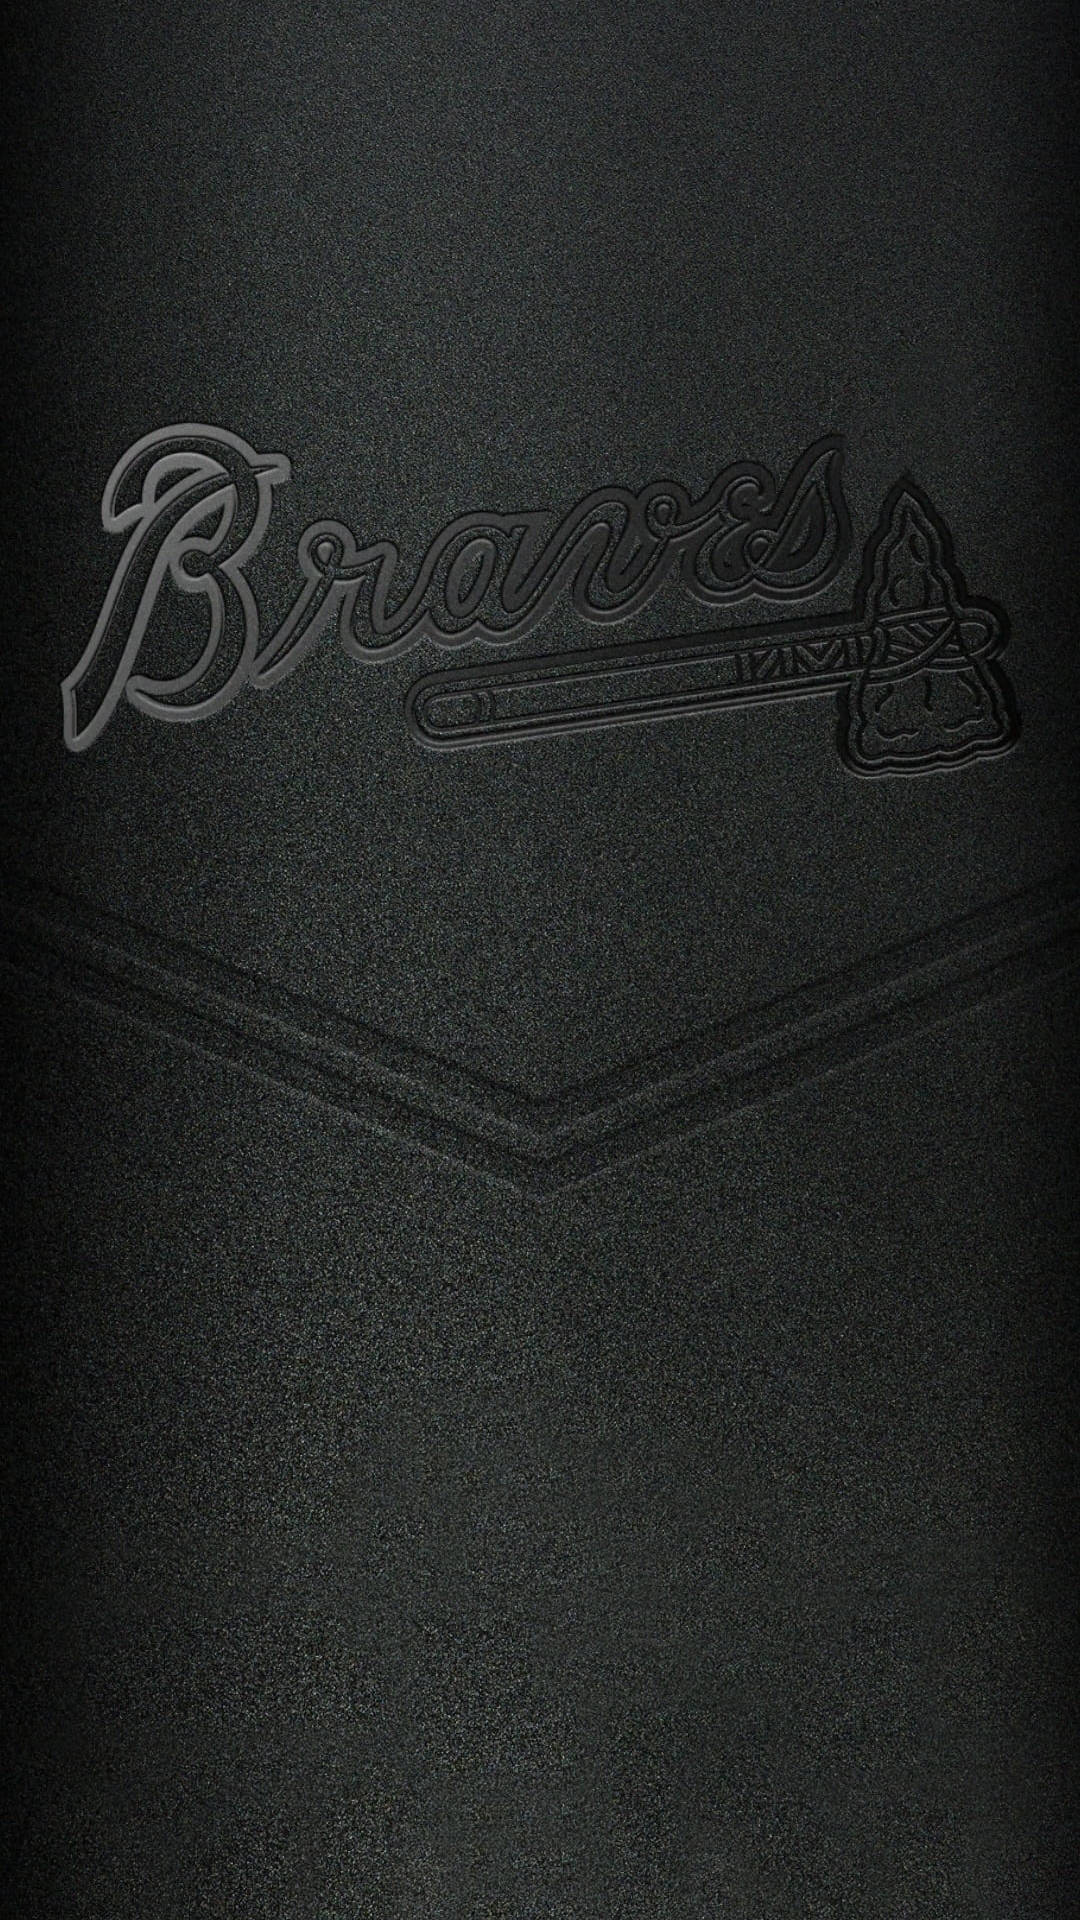 Gravurder Braves Für Das Iphone Baseball Wallpaper